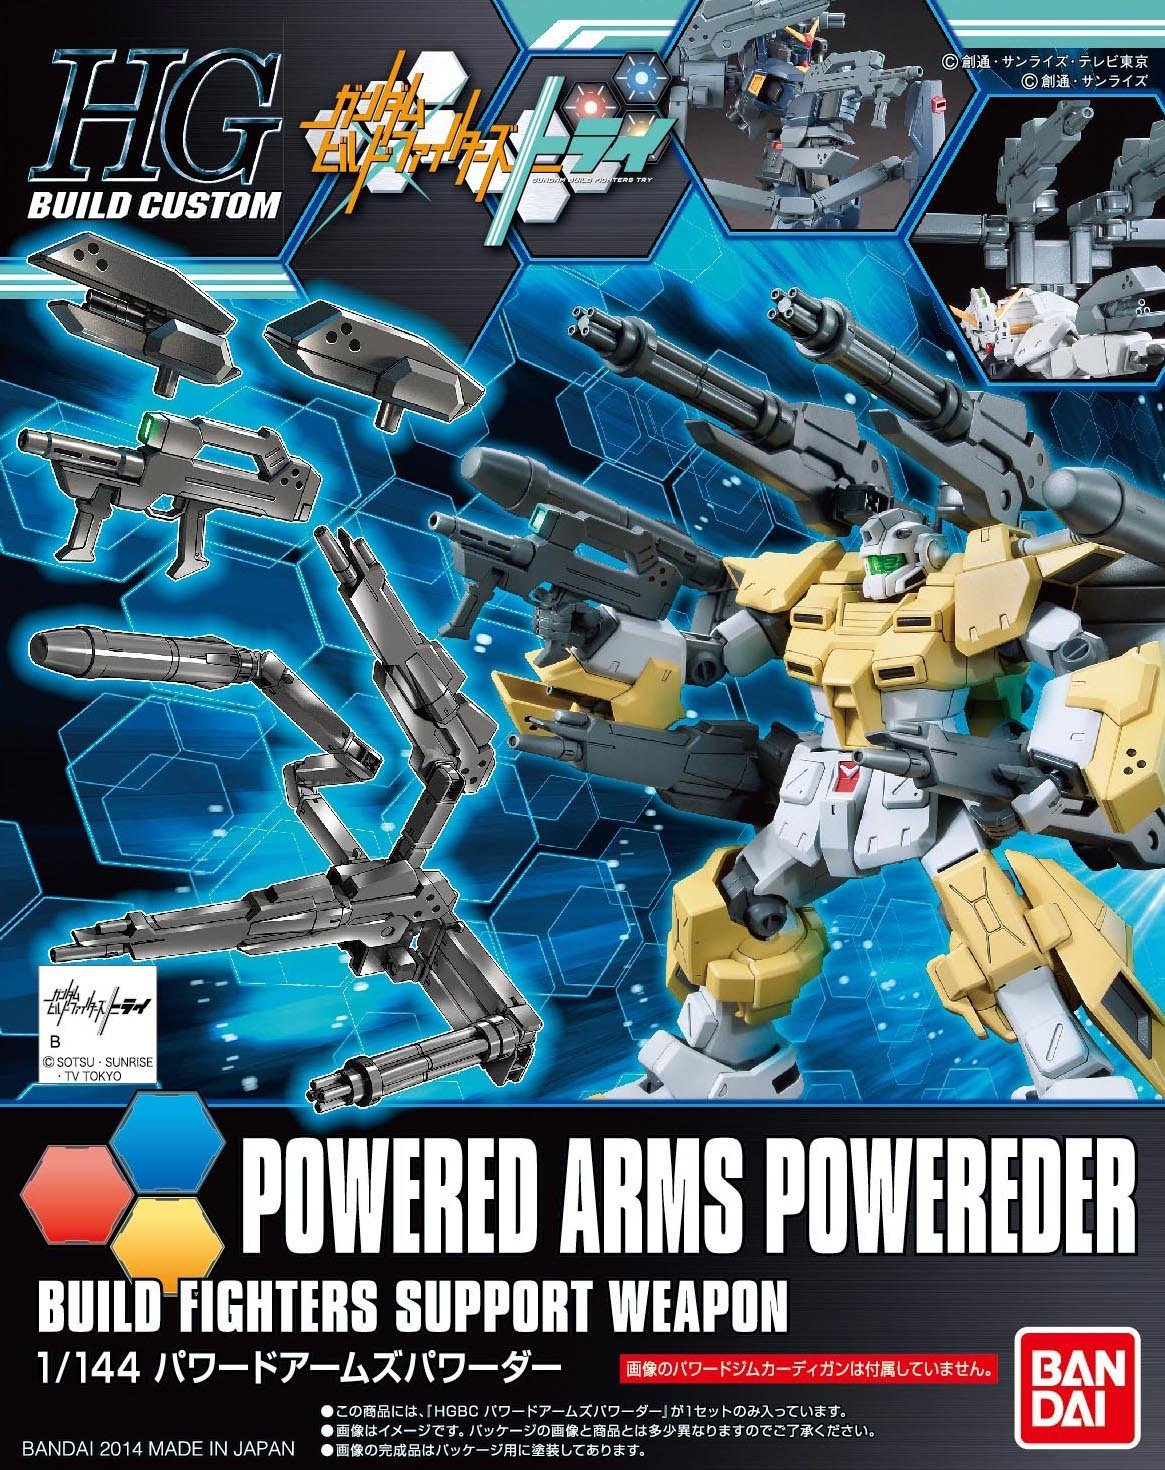 HGBF 1:144 Powered Arms Powerder @ Impulse Hobbies